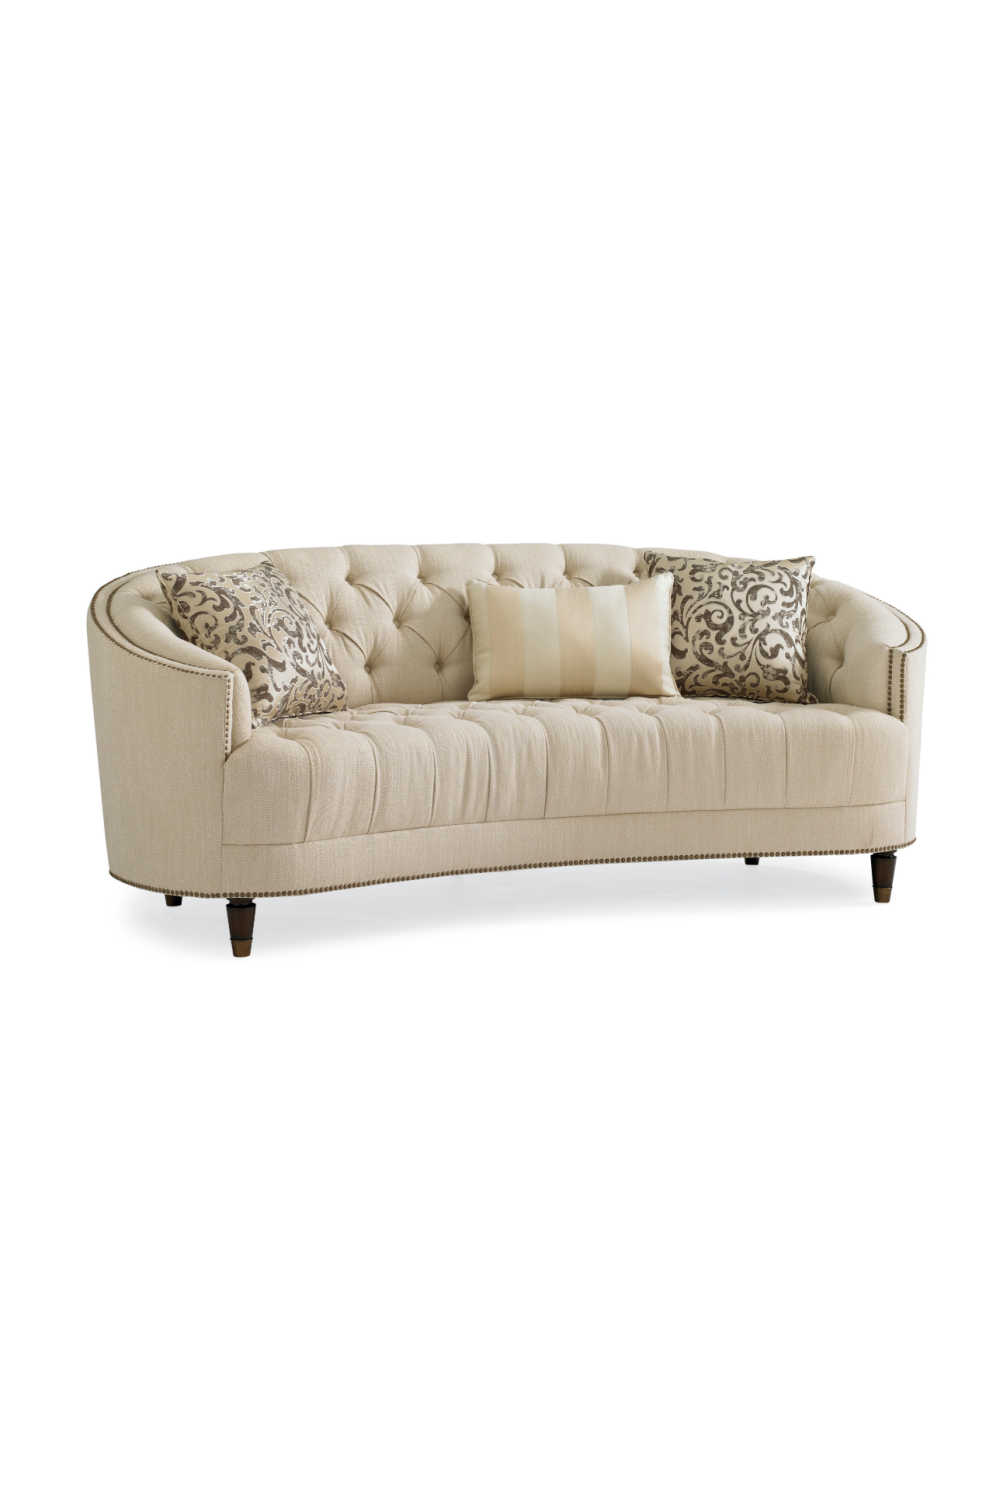 Button-Tufted Sofa | Caracole Classic Elegance | Oroa.com